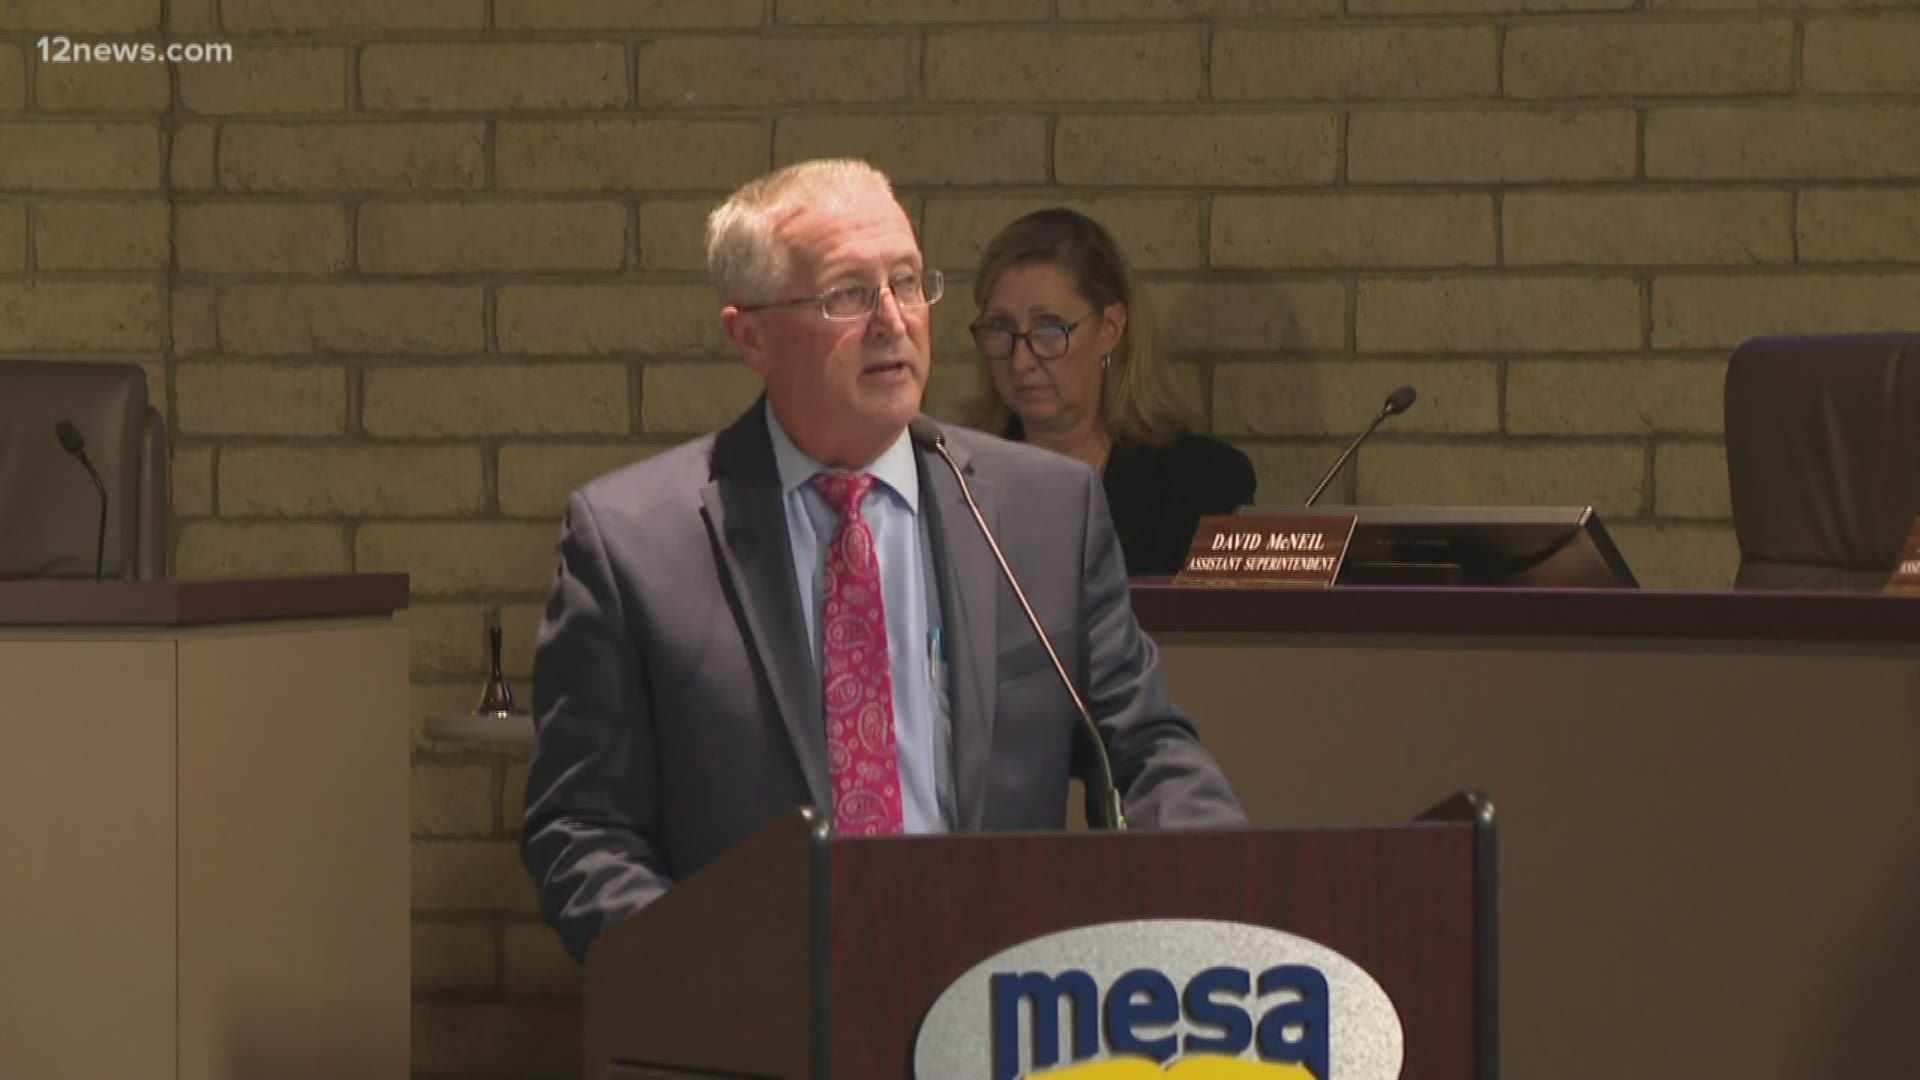 Pete Lesar has been named the new interim superintendent of Mesa Public Schools.